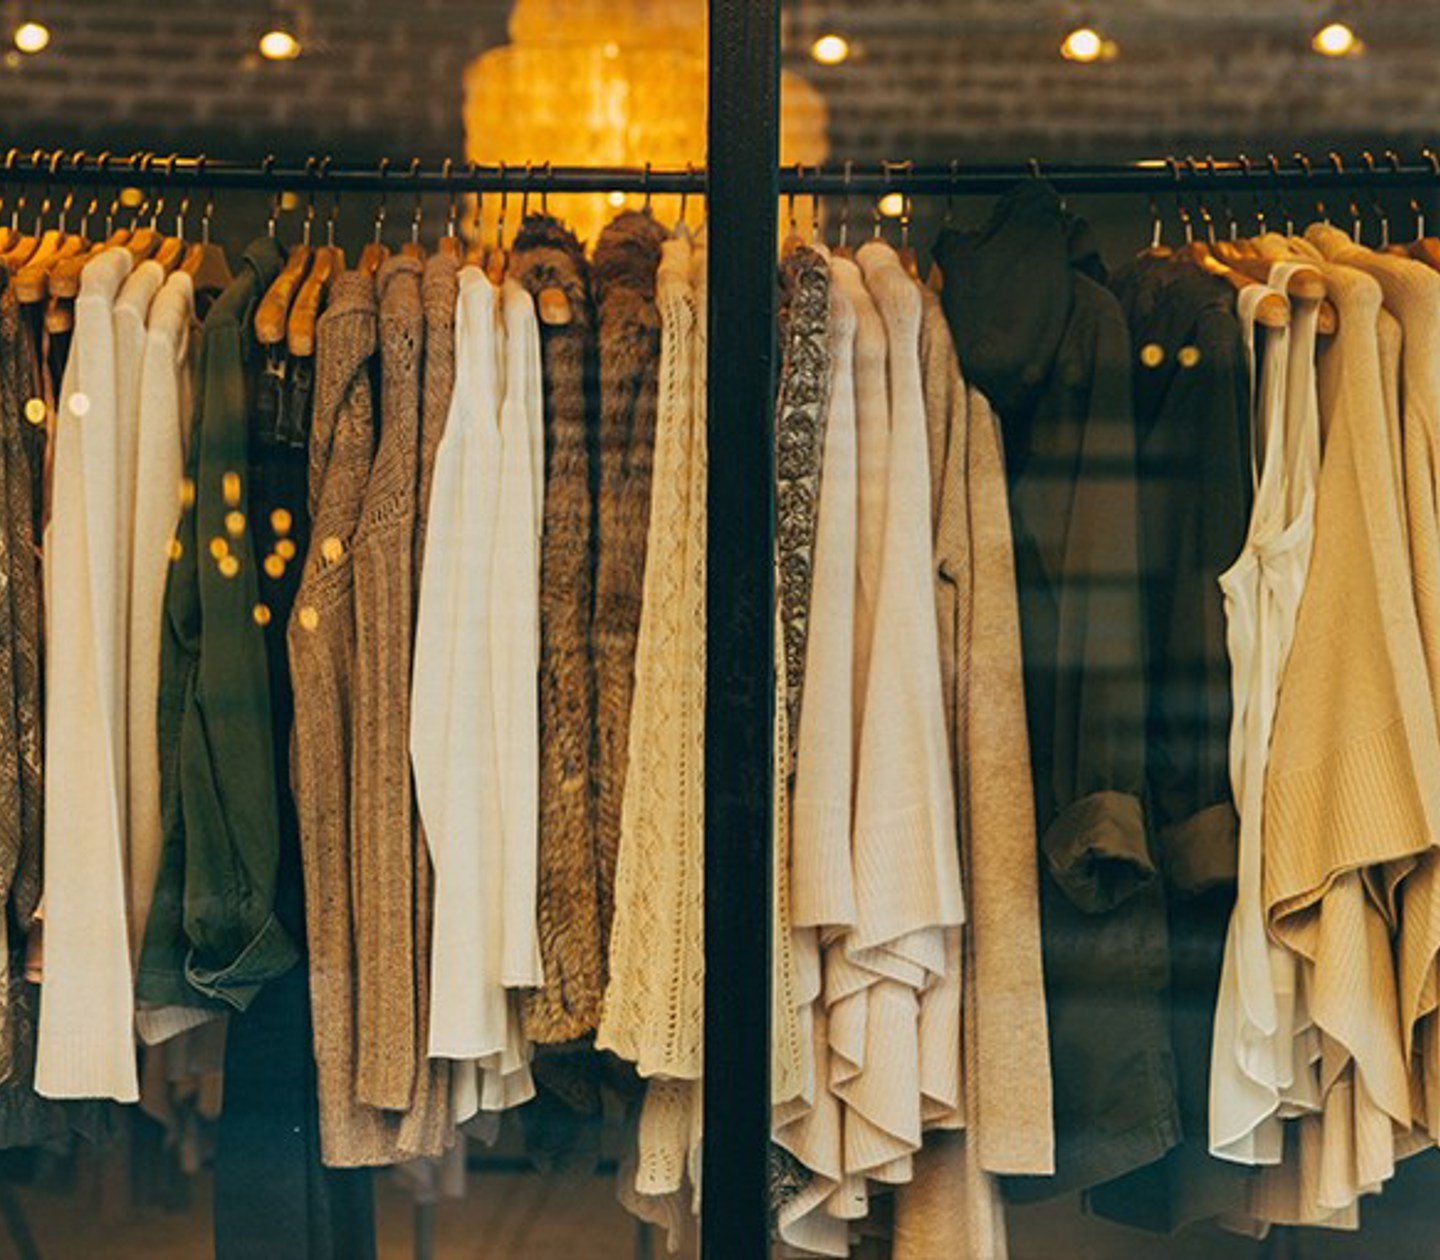 Kläder som är upphängda i ett skyltfönster